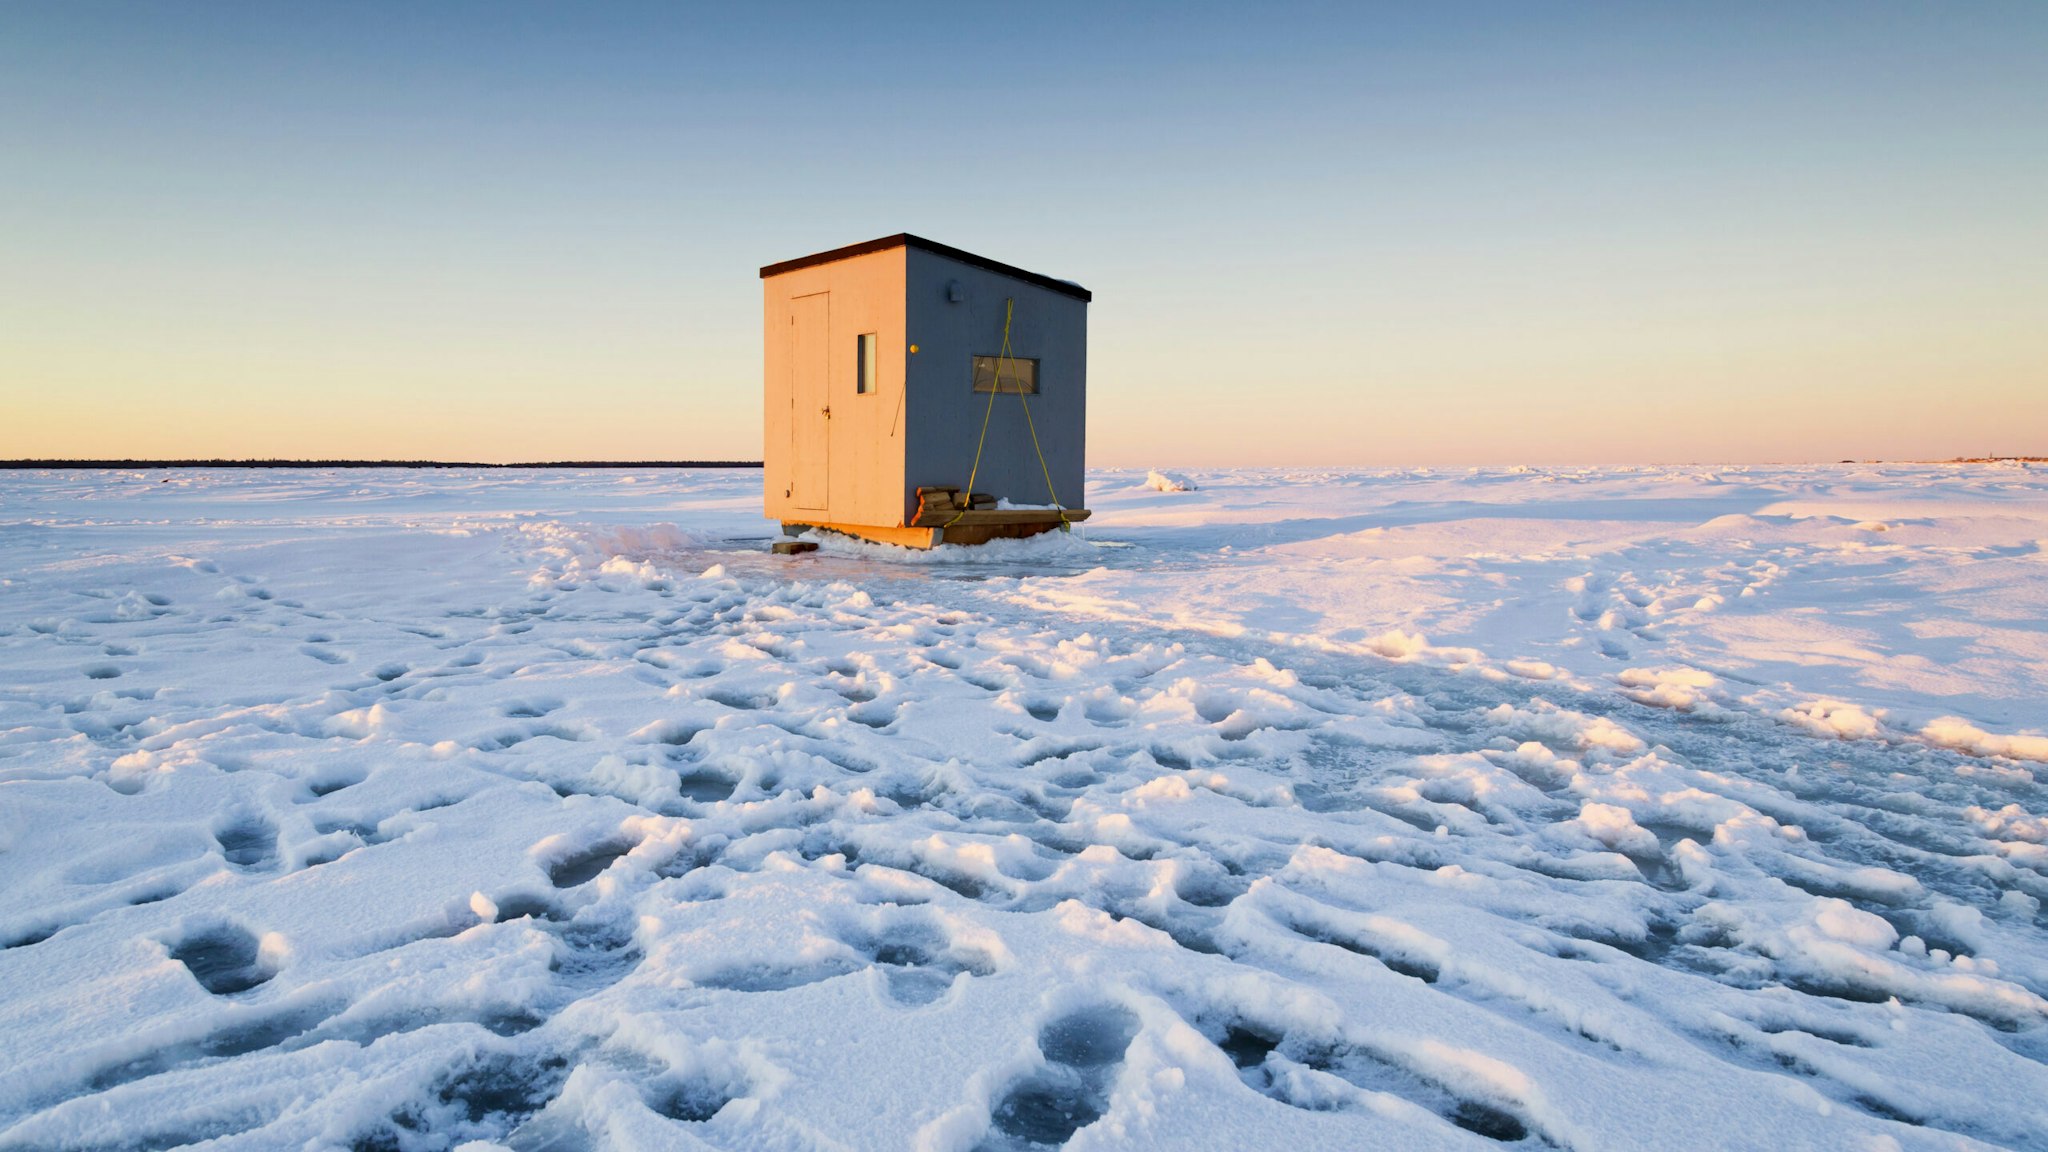 Les promeneurs ont laissé des empreintes de pas dans la neige et sur la galce autour d'une cabane de pêche blanche installée sur la banquise dans la baie de Rimouski (MRC de Rimouski-Neigette, Bas-Saint-Laurent, Québec).